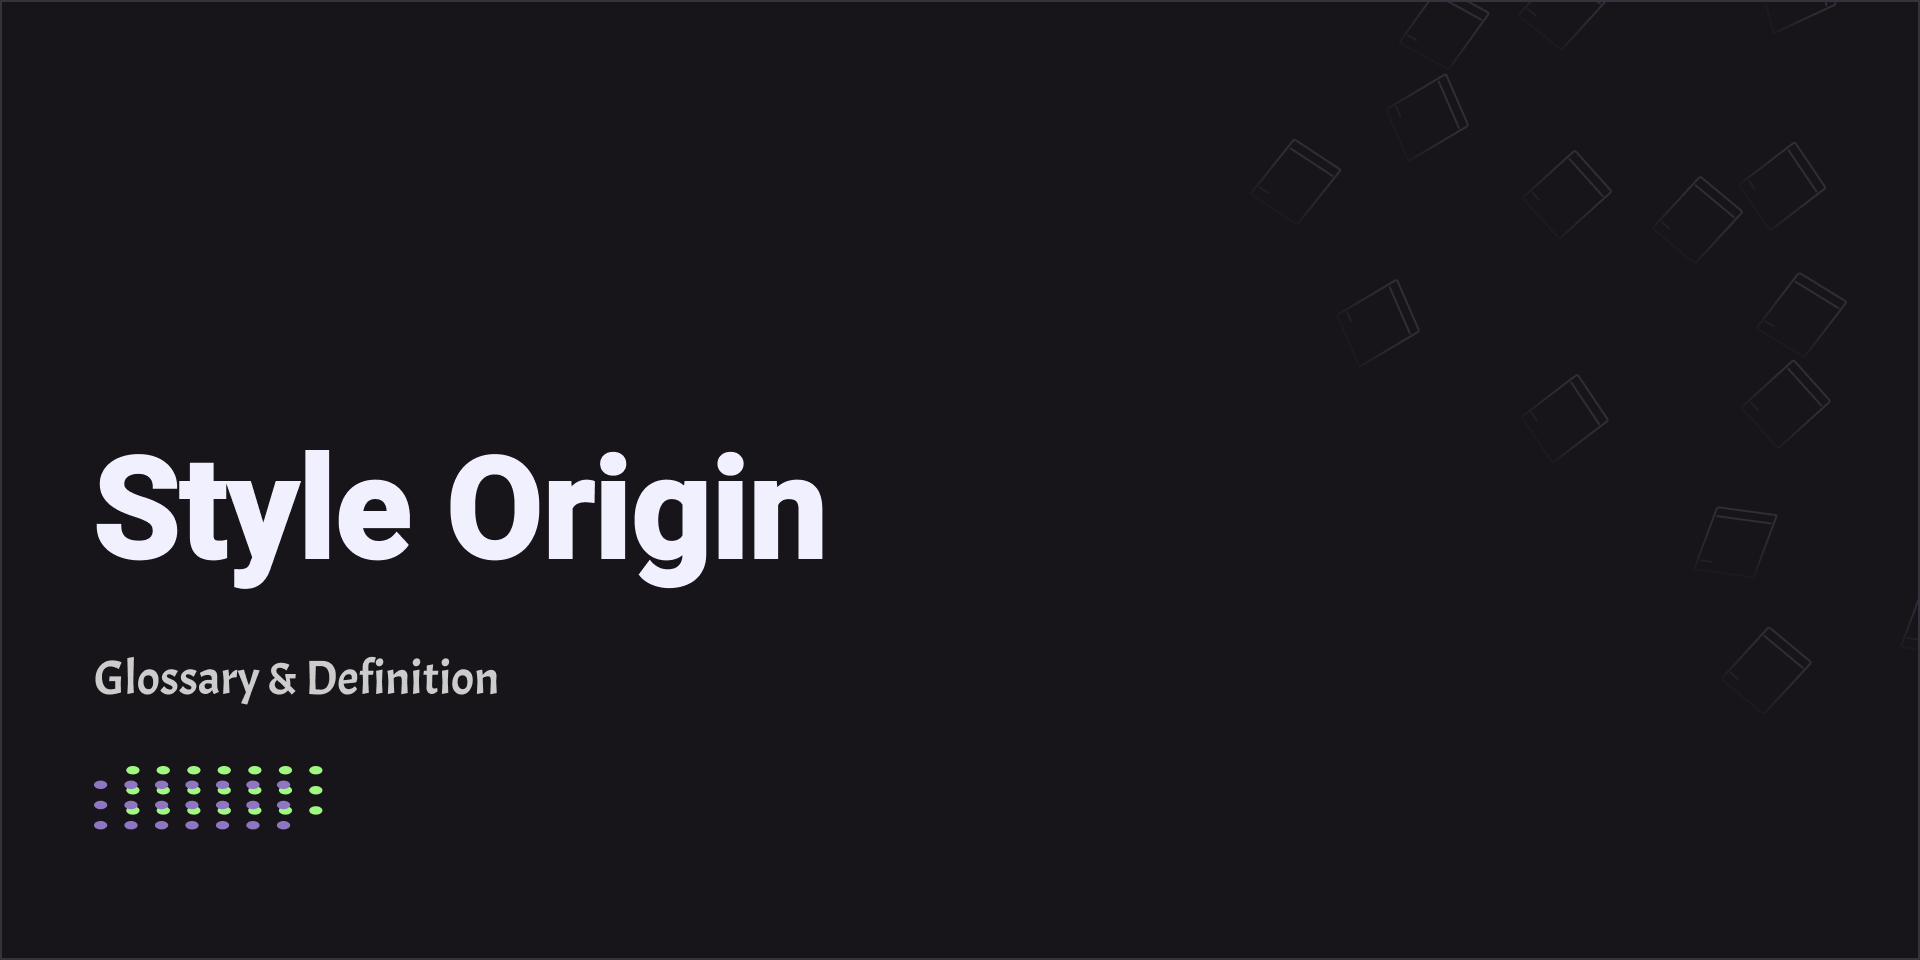 Style Origin